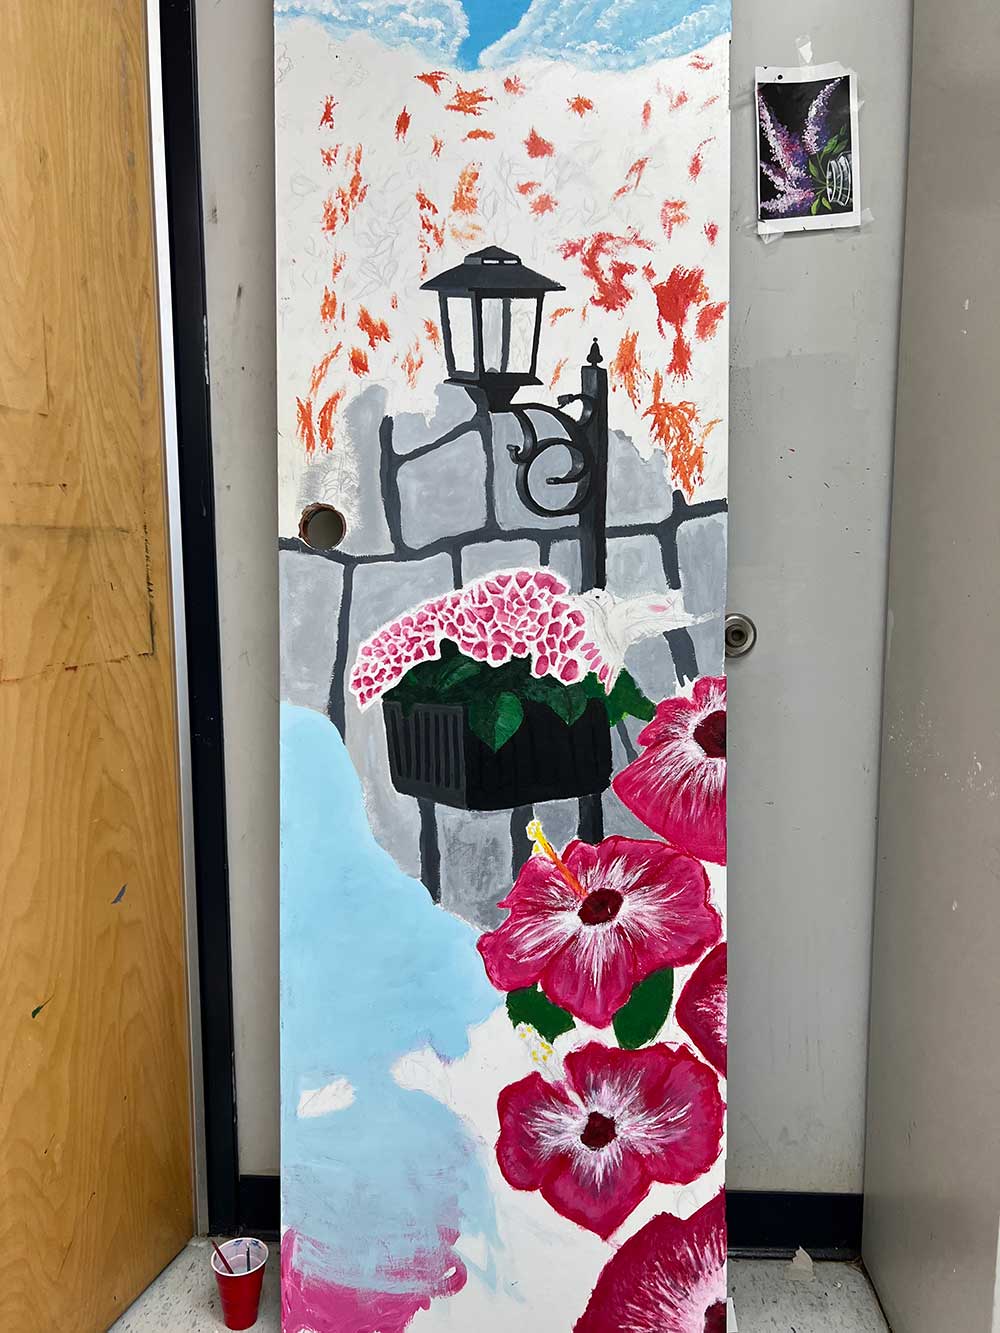 Painted door for “Opening Doorways to Spring” Exhibit